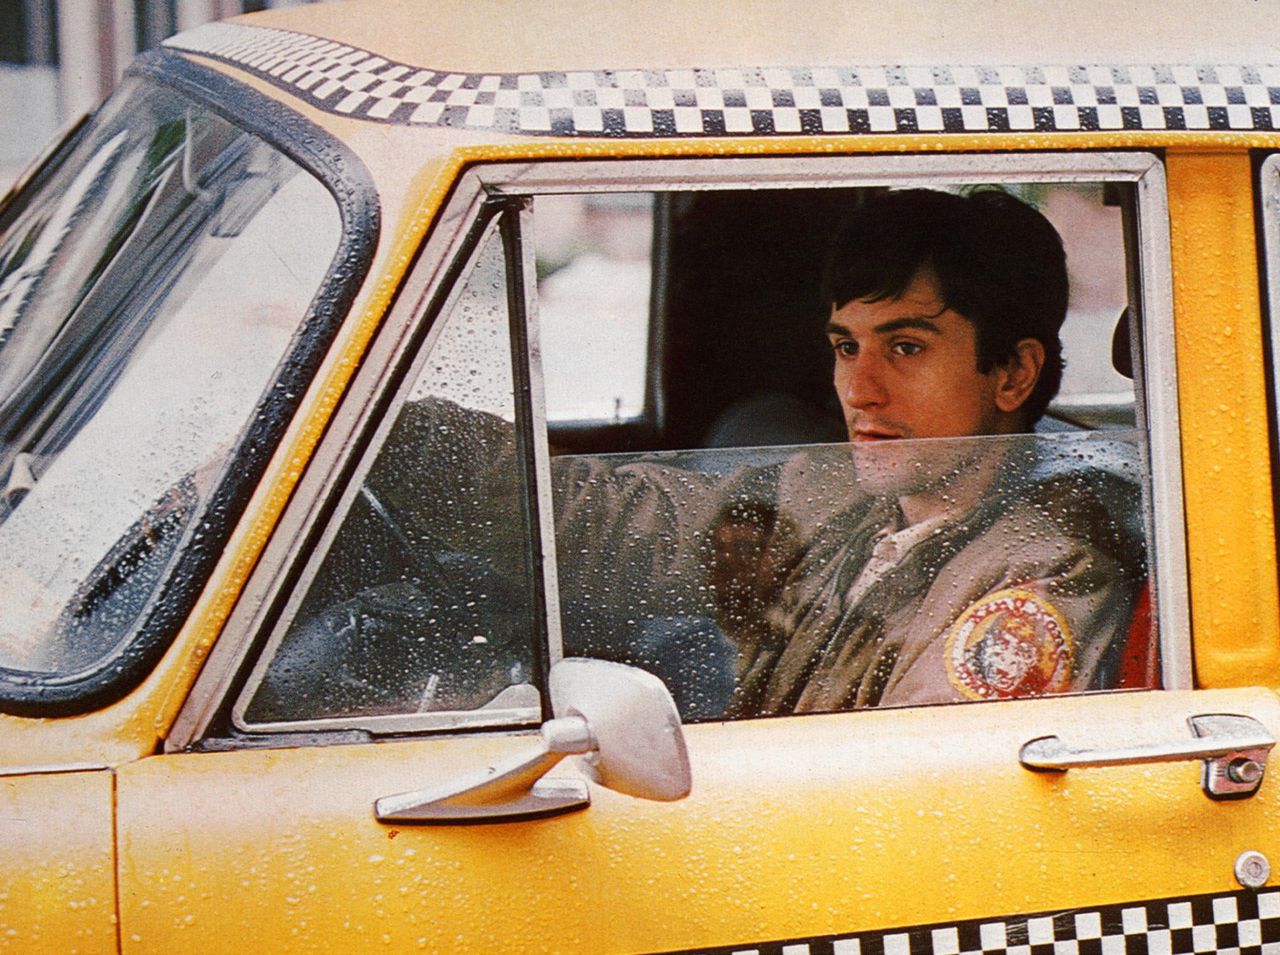 ‘Taxi Driver’ met Robert De Niro. Quentin Tarantino maakt zich vrolijk over de hypocriete bewering van regisseur Martin Scorsese dat hij diep geschokt was door de joelende zalen bij de bloederige climax van de film.